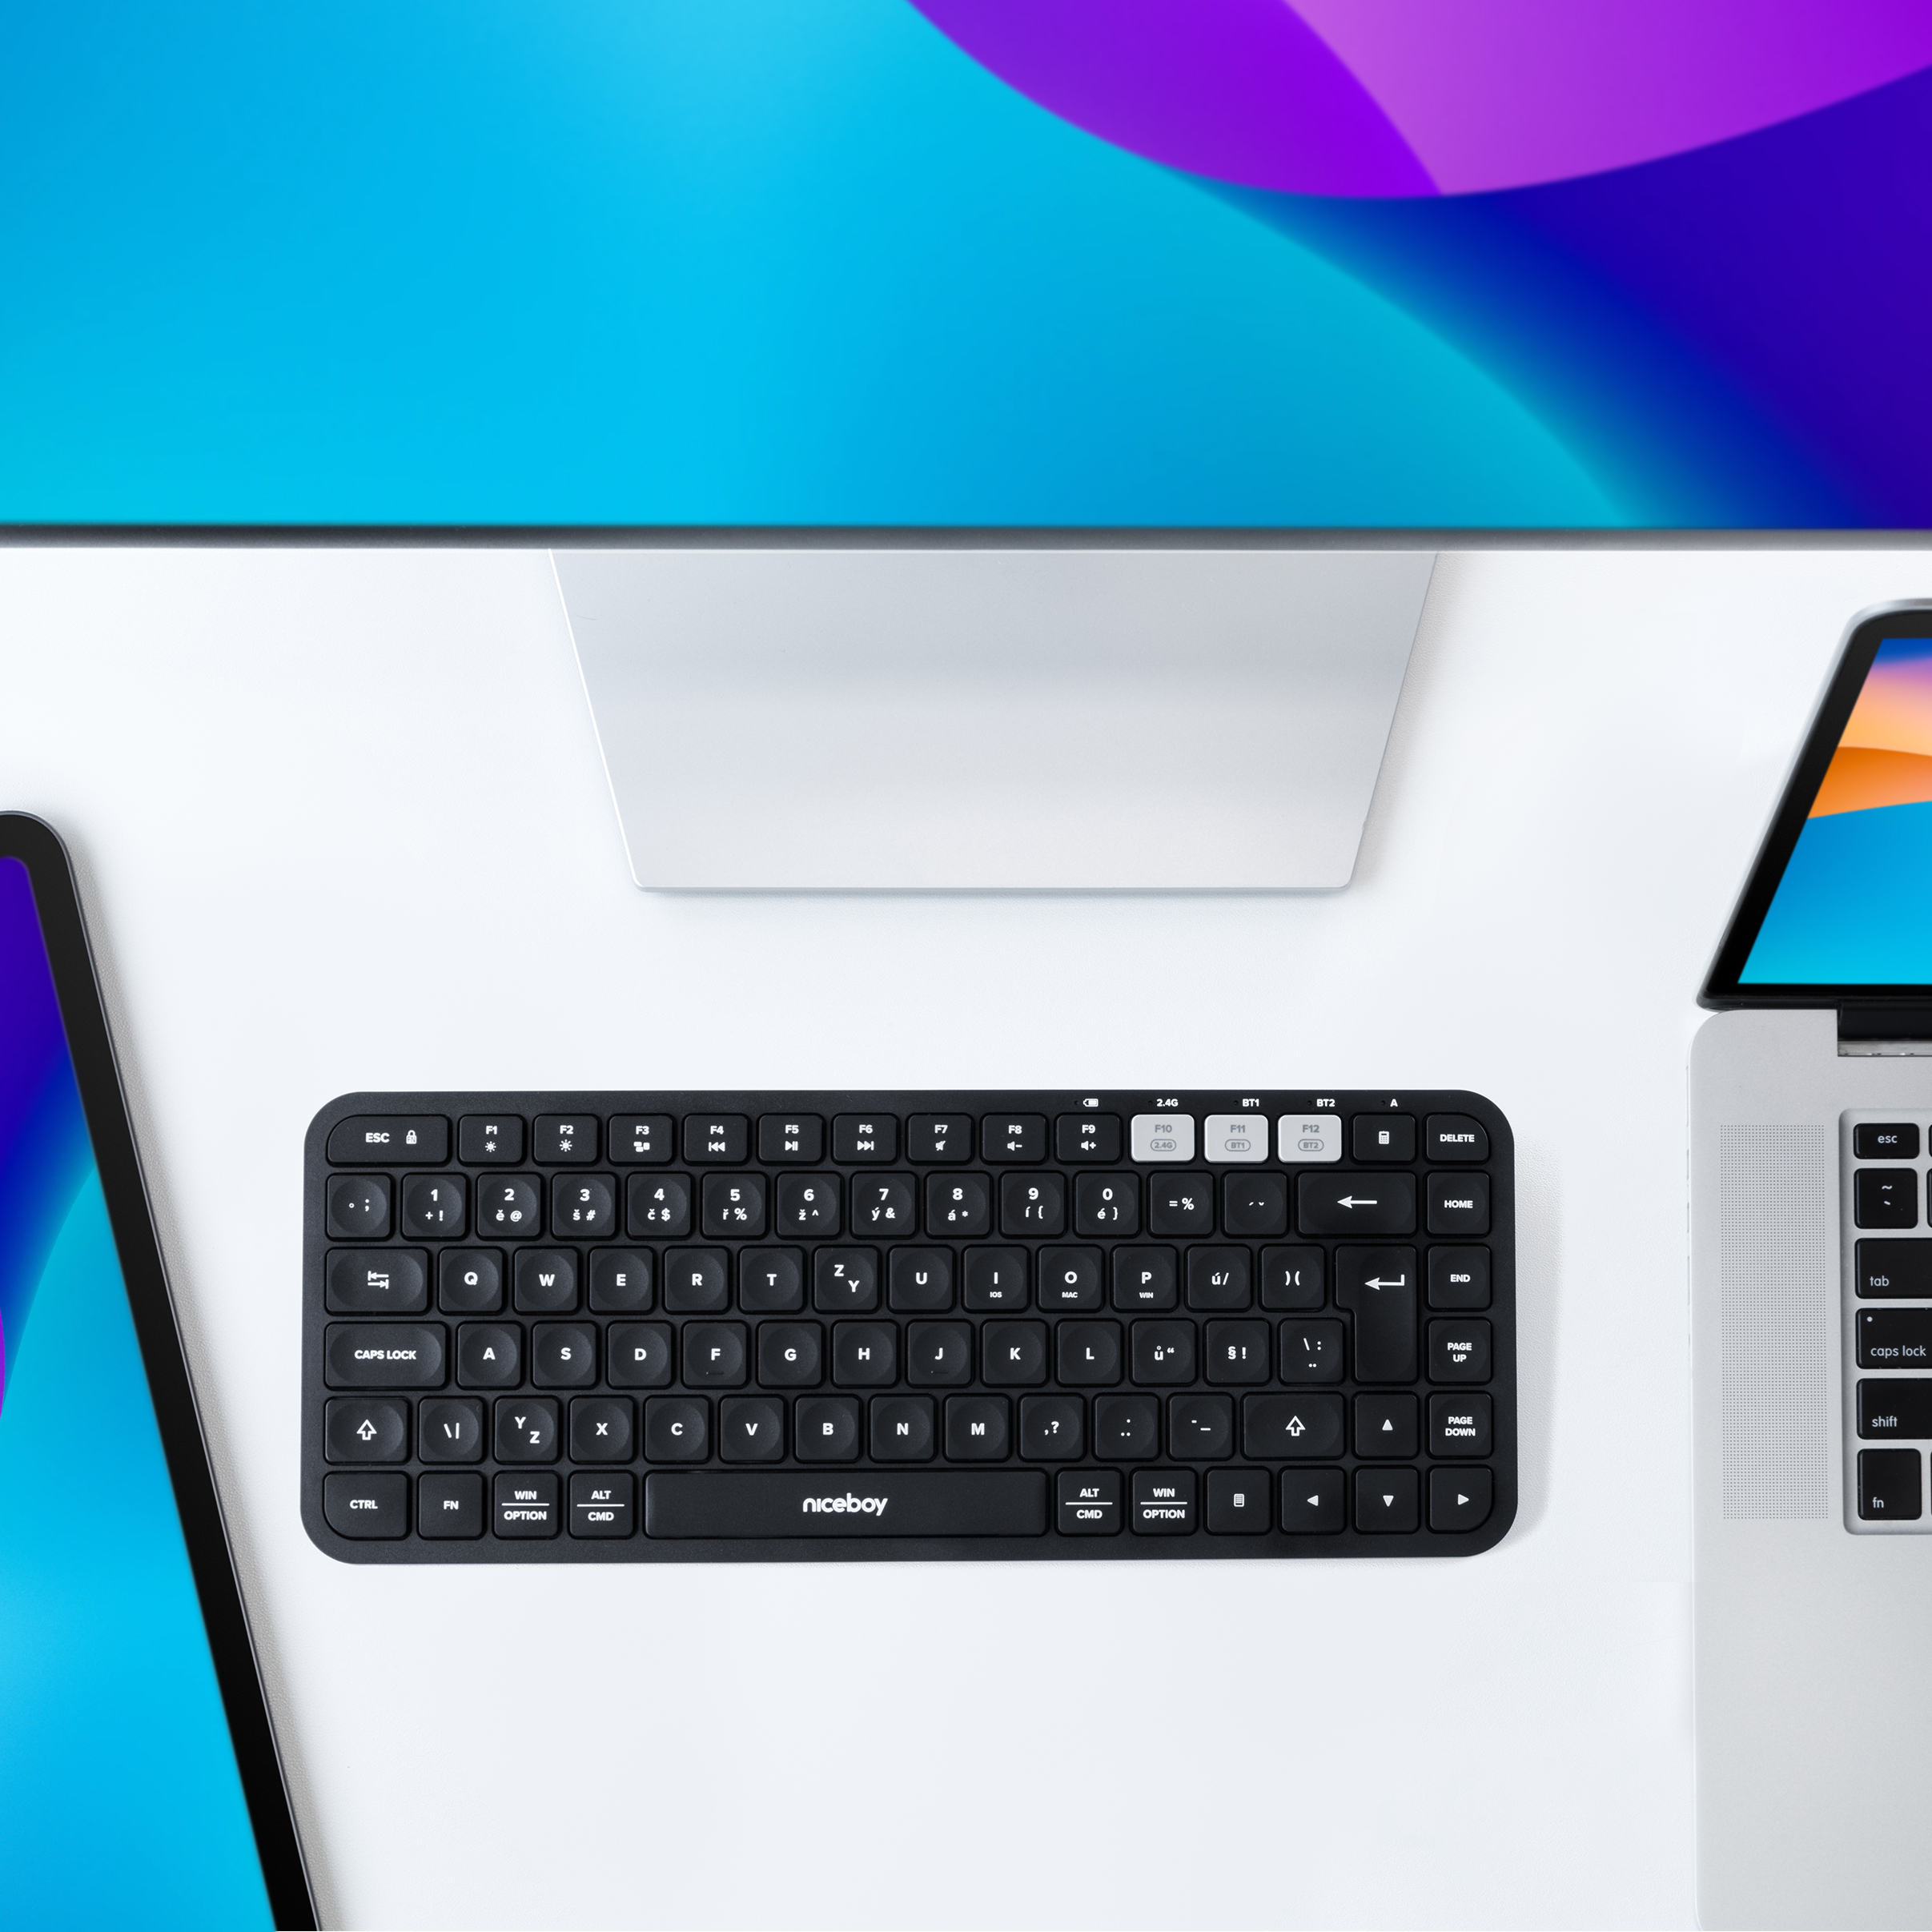 Bezdrôtová klávesnica Niceboy Office K30X BT na stole pri monitore a notebooku